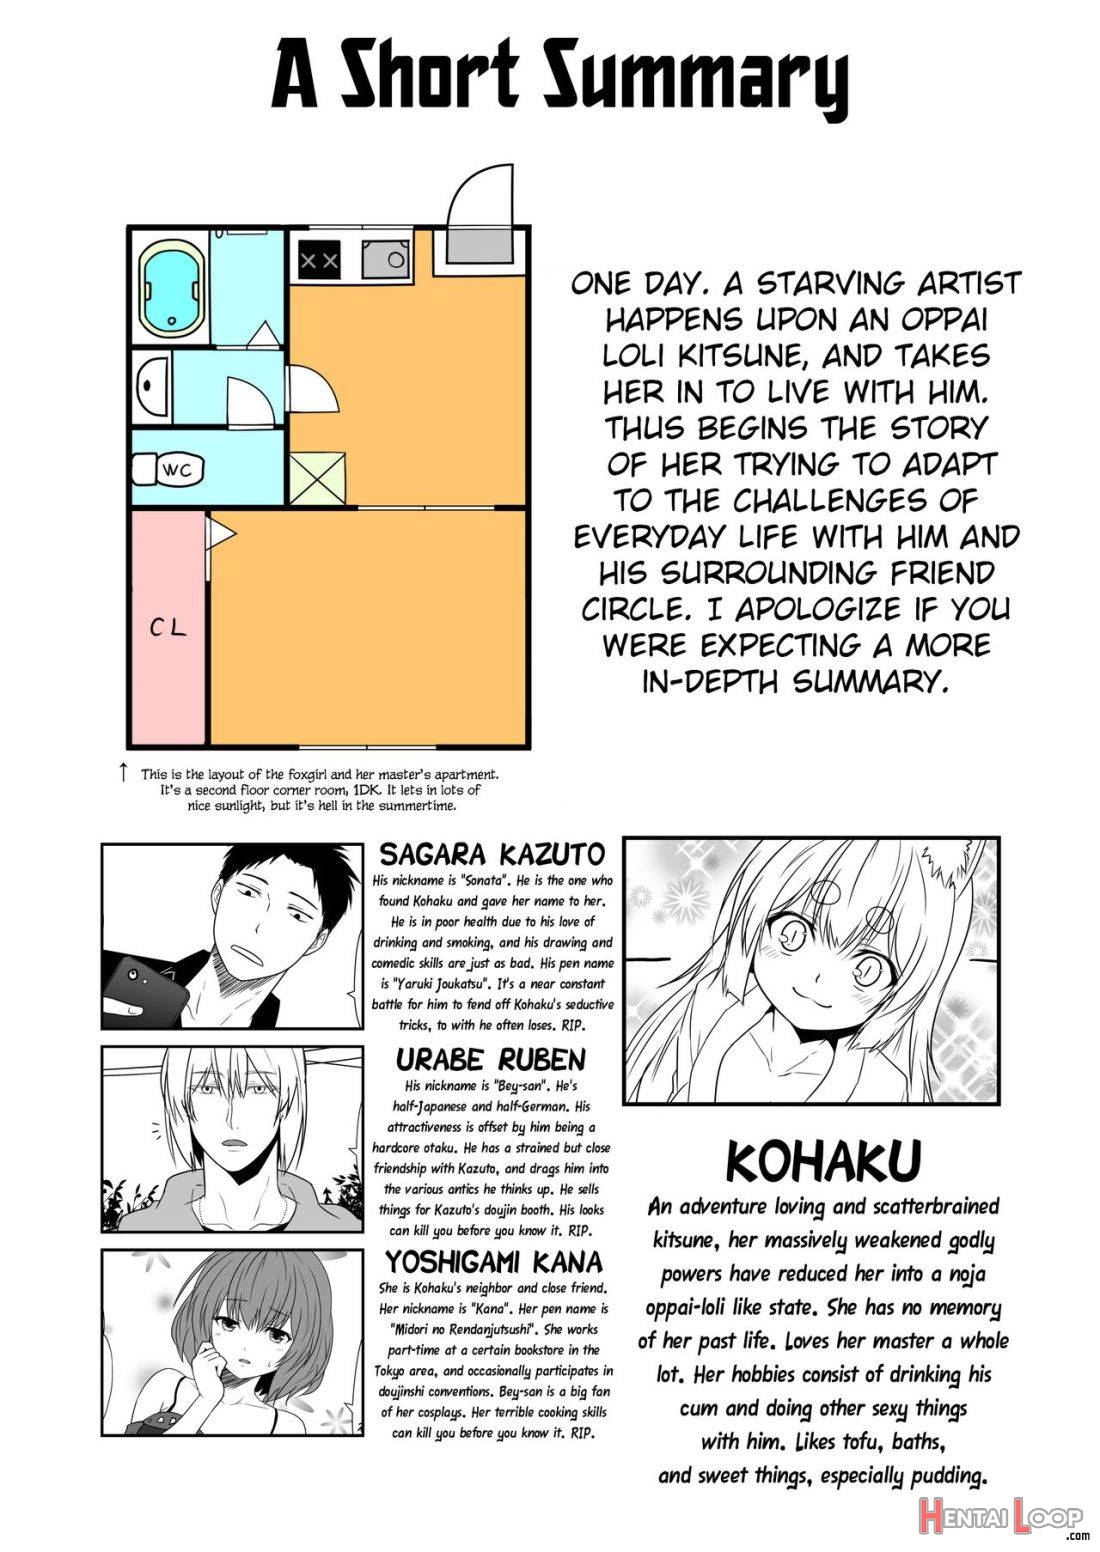 Kohaku Biyori Vol. 7 page 2